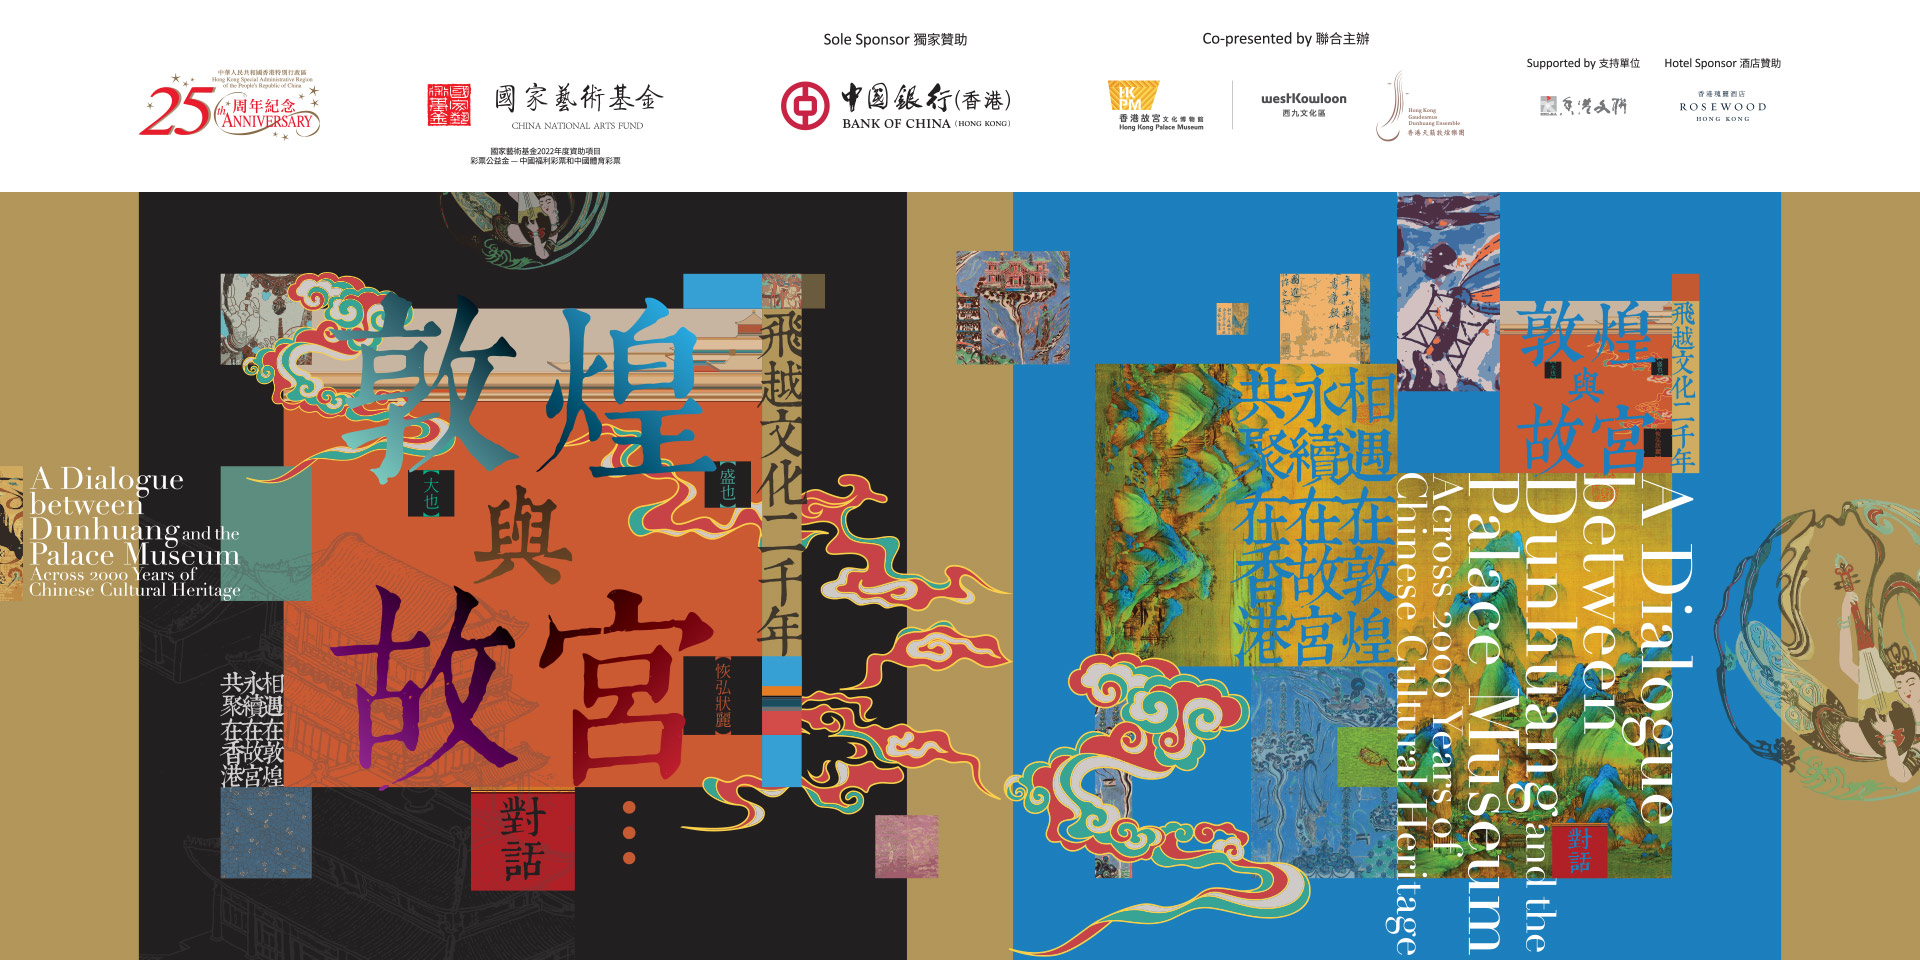 a-dialogue-between-dunhuang-and-palace-museum-across-2000